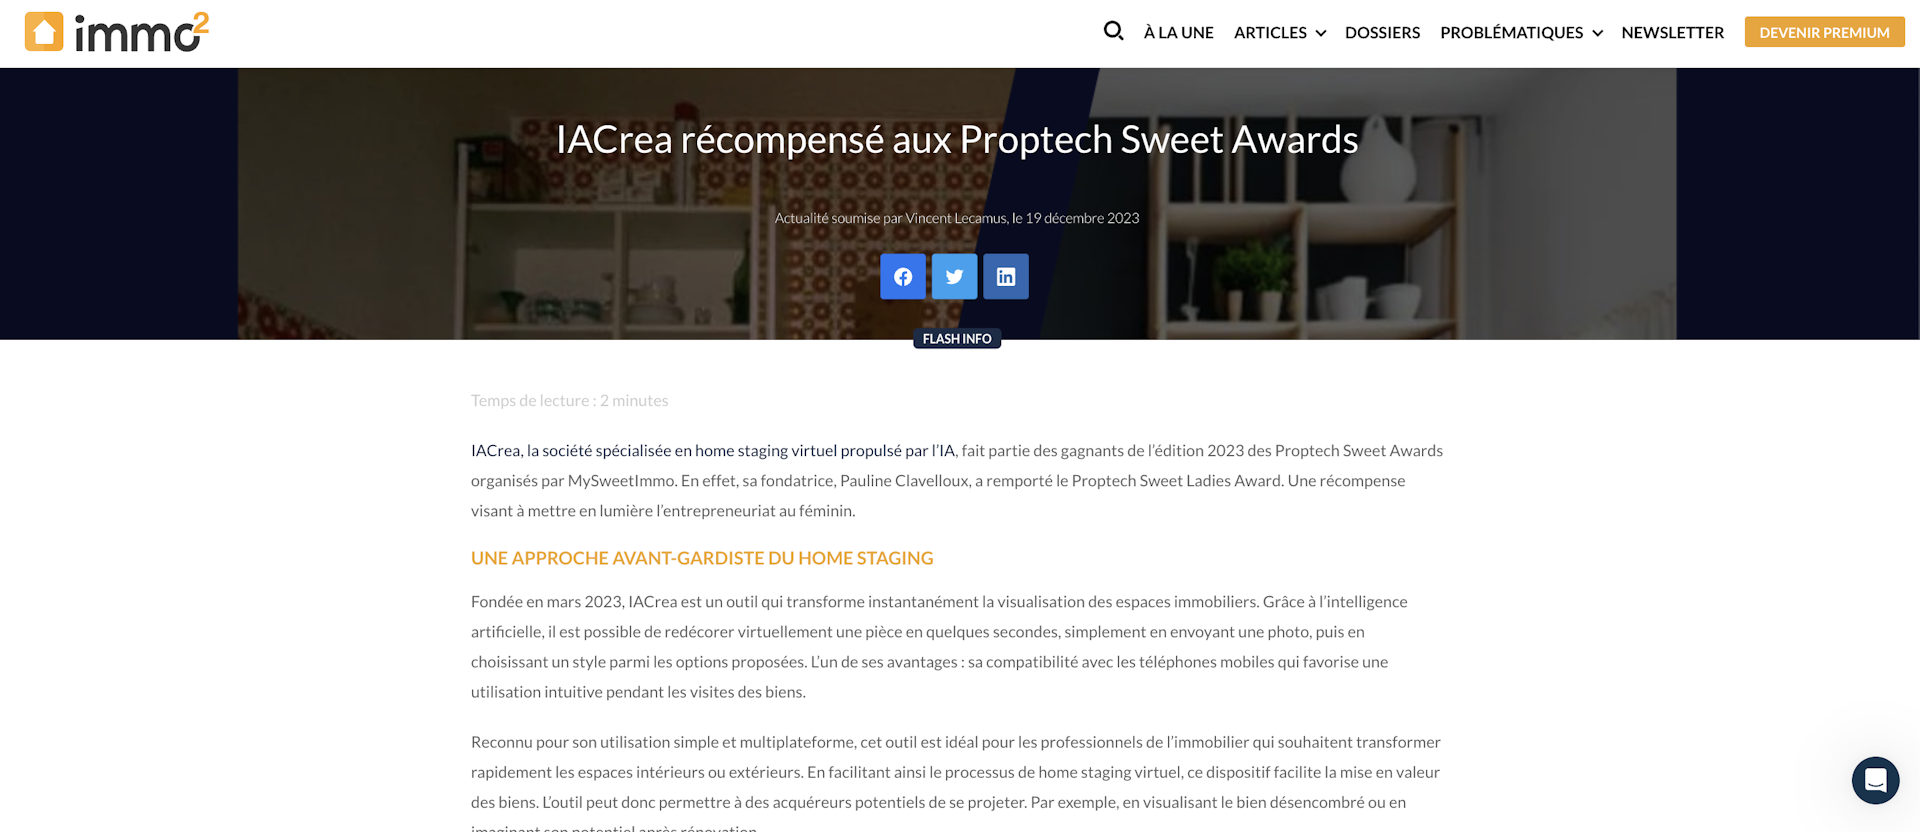 IACrea récompensé aux Proptech Sweet Awards - Article de Immo2